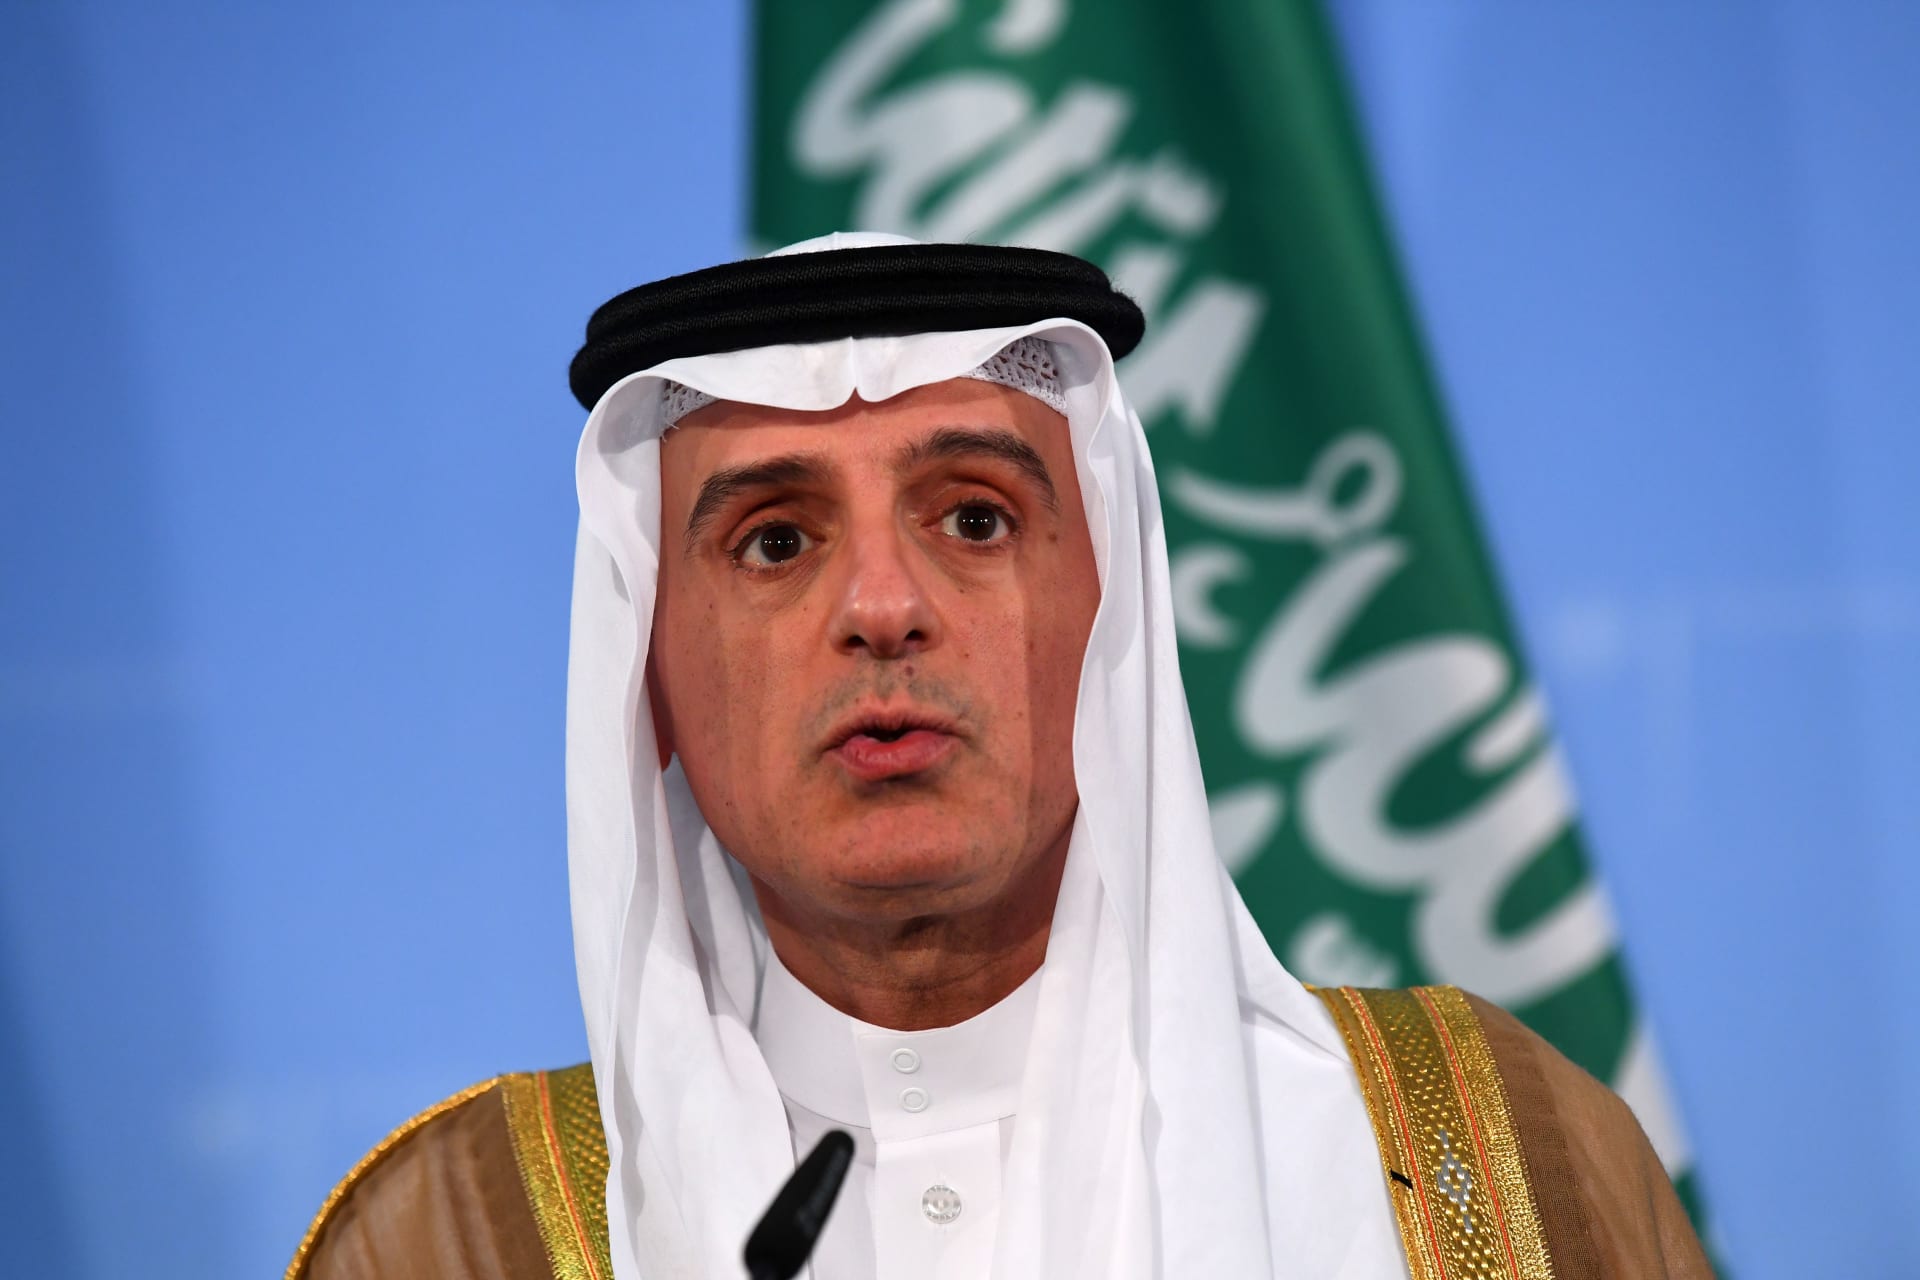 السعودية تنفي طلب أي وساطة مع إيران "جملة وتفصيلاً"